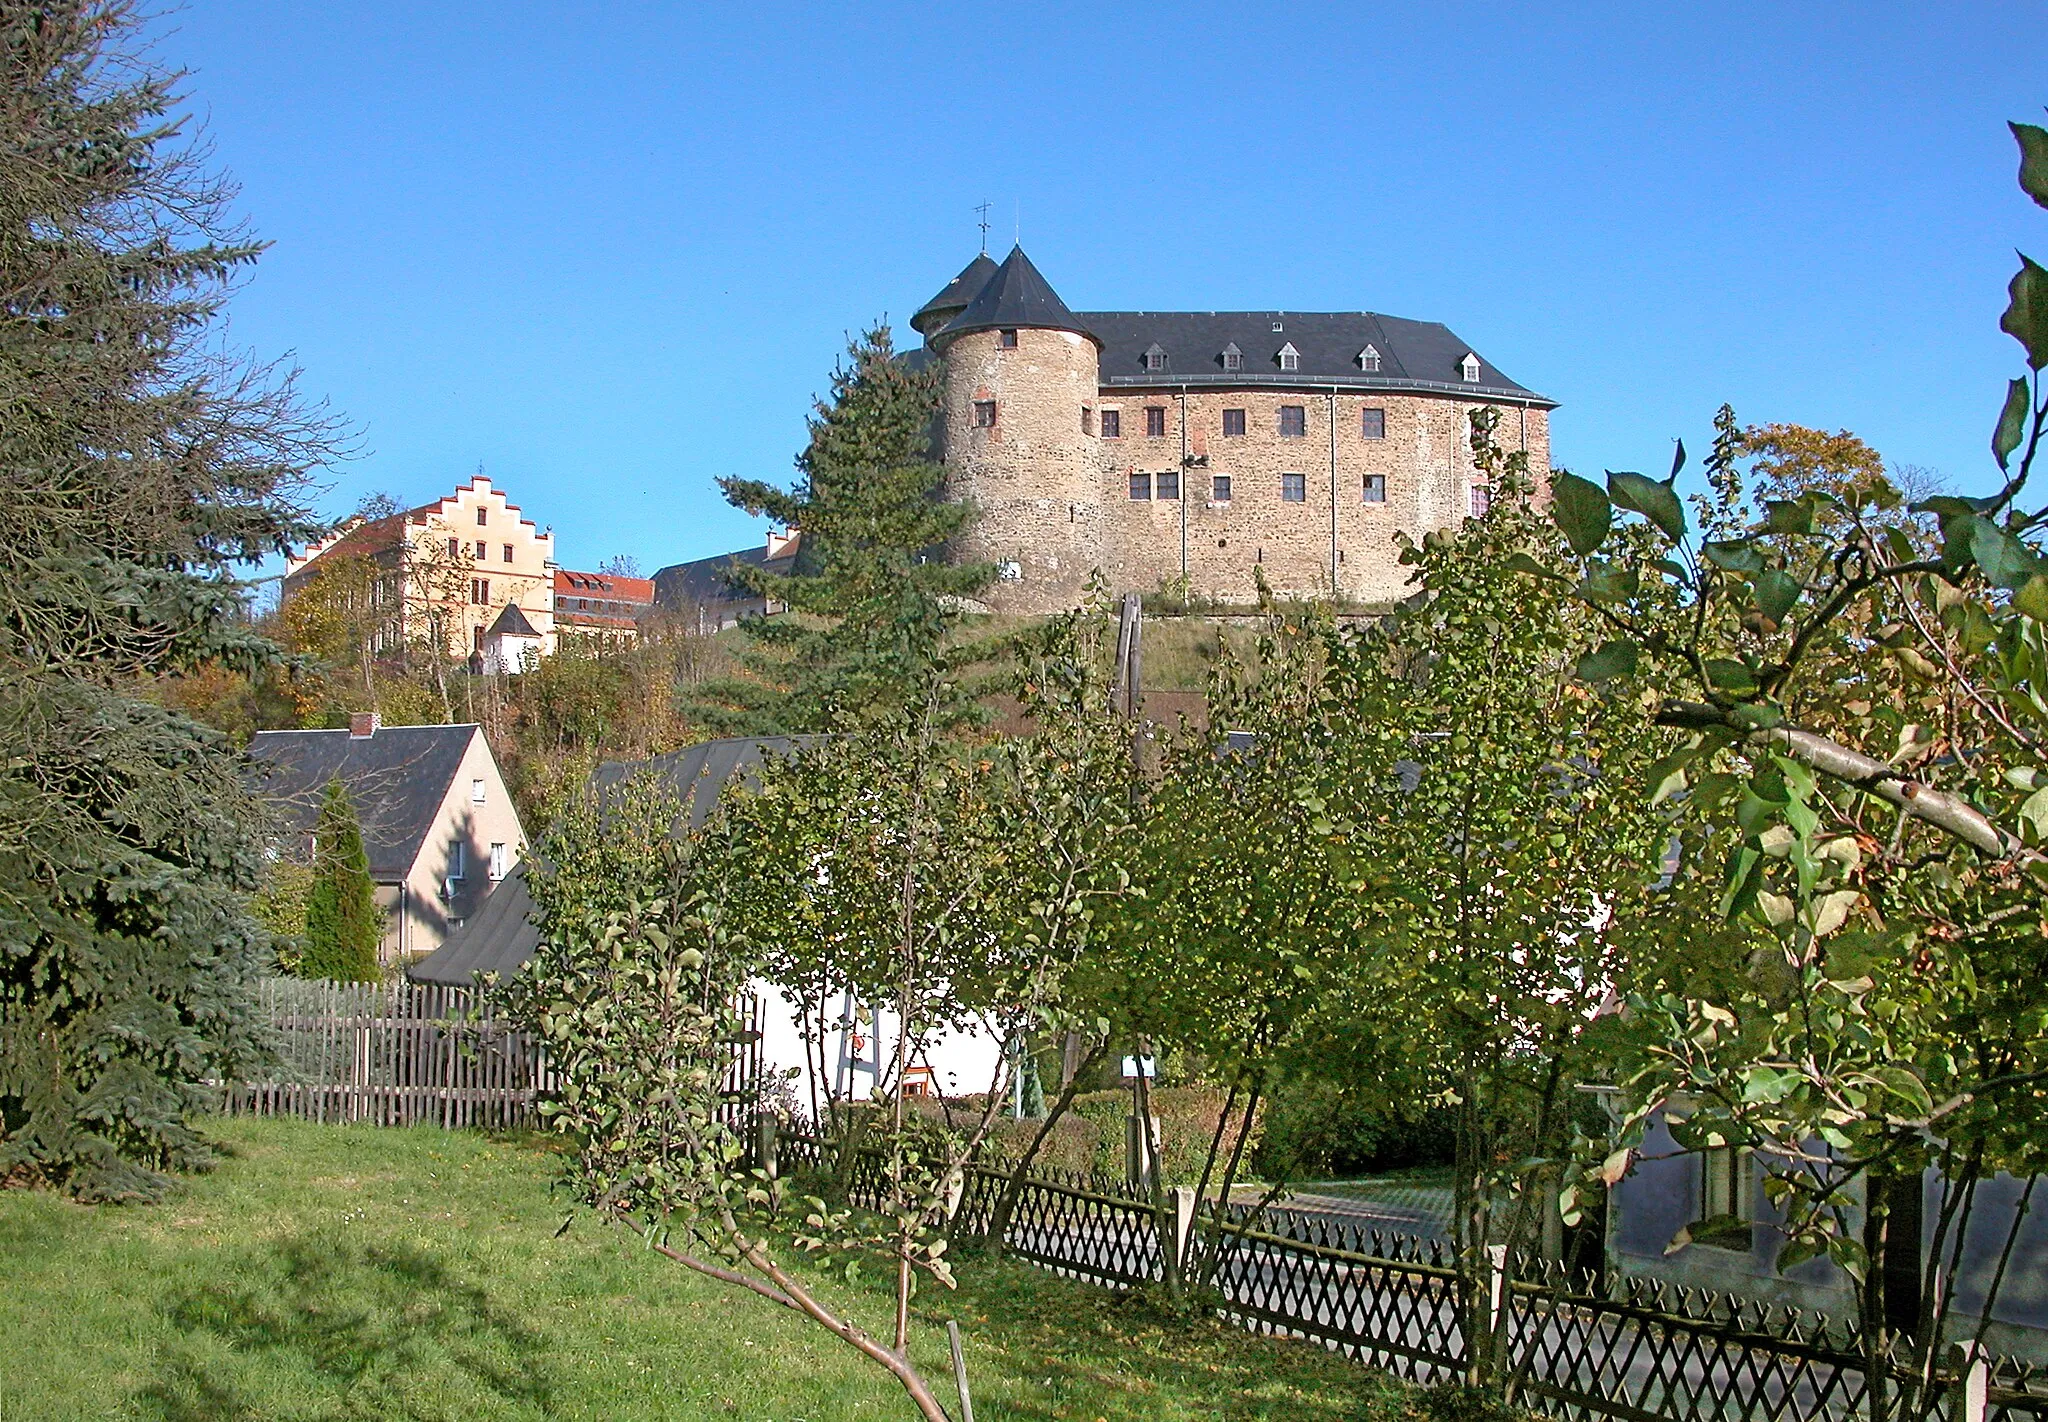 Photo showing: 15.10.2007  08606  Voigtsberg (Oelsnitz) Schloßstraße 32: Burg/Schloß Voigtsberg (GMP: 50.422280,12.183285). Die Burg (rechts) wurde vermutlich in der Zeit von 1232 bis 1249 durch Eberhard von Voigtsberg errichtet. 1865 legte man in das Schloß (links) eine "Gefängnisanstalt für Weiber", die 1924 wieder aufgelöst wurde. Der älteste erhaltene Teil ist der Bergfried mit 22 m Höhe und einer Mauerstärke von 3,30 m, in dessen unterem Teil sich einst das Burgverlies befand. In einem Teil des Schlosses befindet sich das 1937 eingerichtete Teppich- und Heimatmuseum der Stadt Oelsnitz. In der DDR war auf der Burg ein Jugendwerkhof untergebracht, danach eine Kaserne der Nationalen Volksarmee (NVA), bis 1967 die Stadt Oelsnitz die Burg in ihren Besitz nahm. Sicht von Süden.                                            [DSCN30674.TIF]20071015610DR.JPG(c)Blobelt